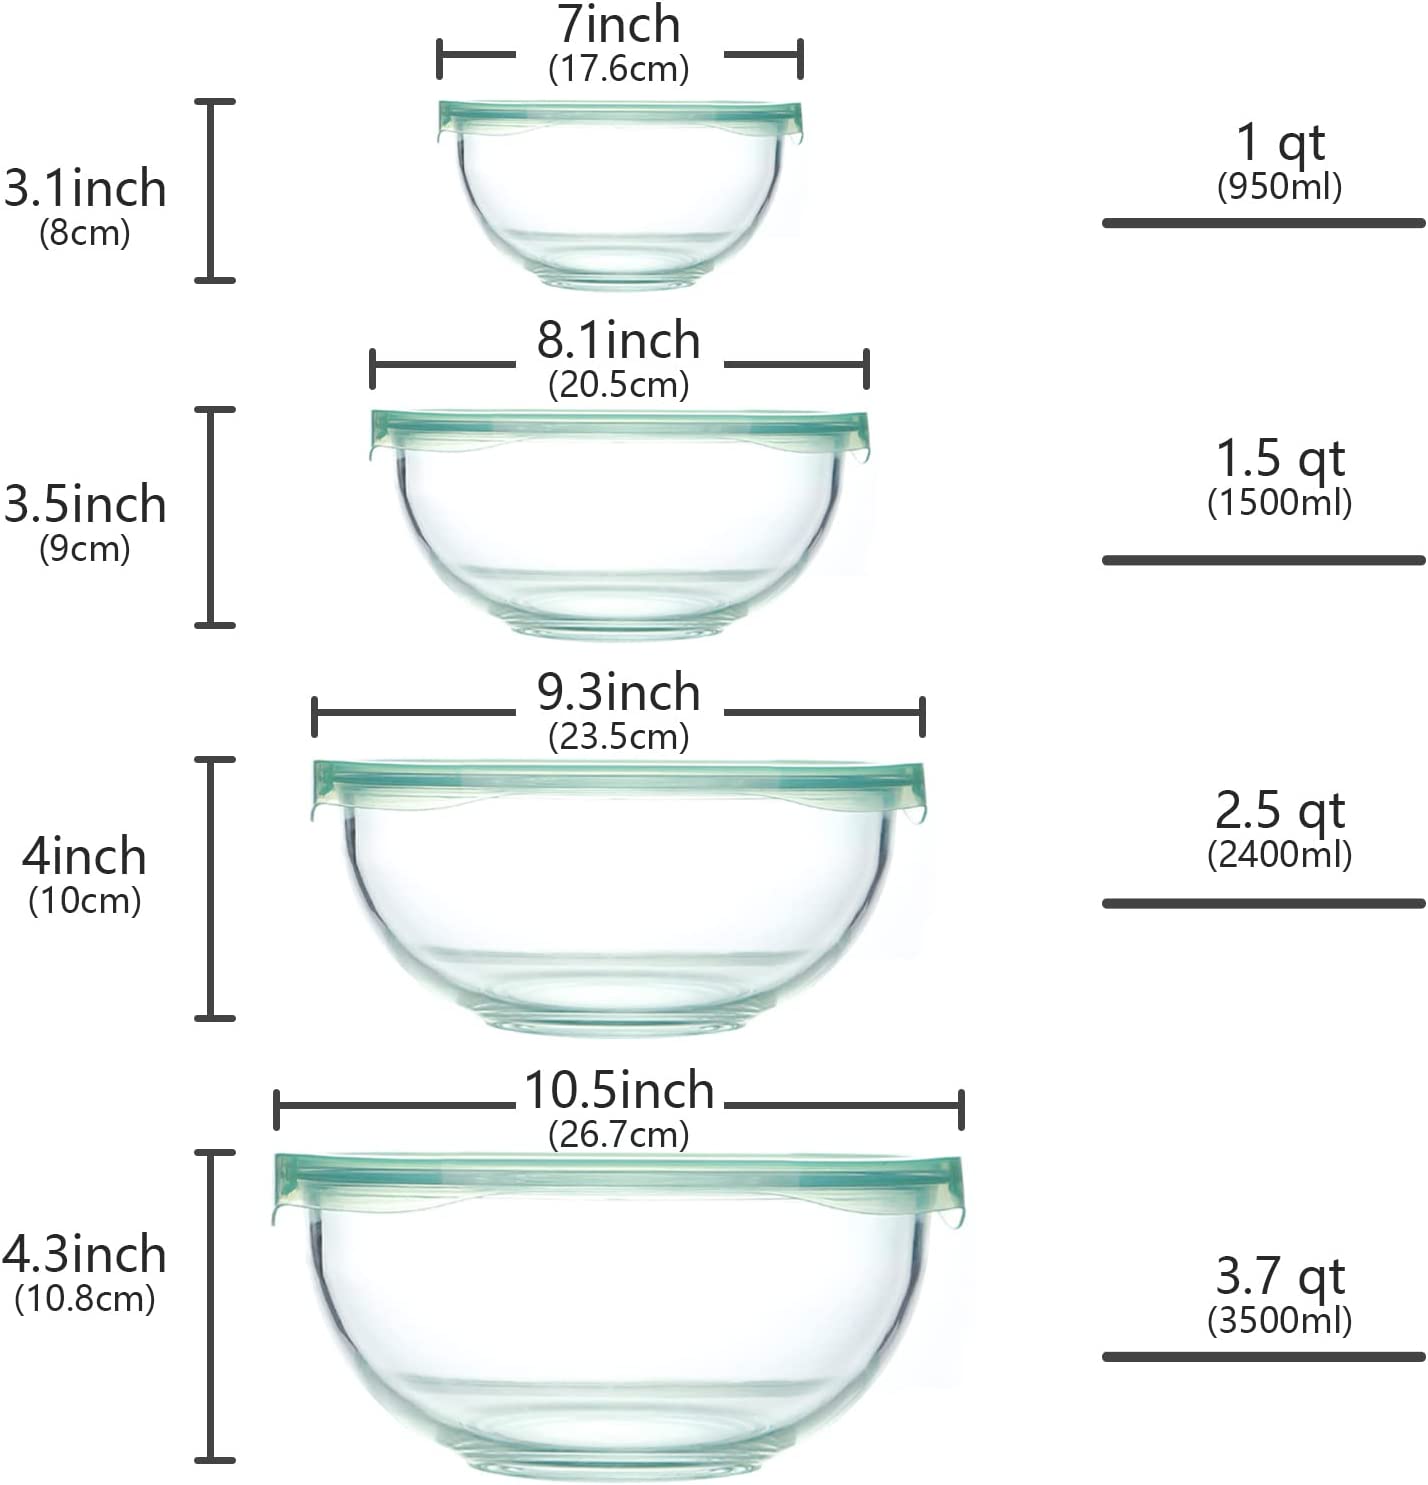 Glass Mixing Bowl with Lids Set of 3 (1.1qt,2.7qt,4.5qt